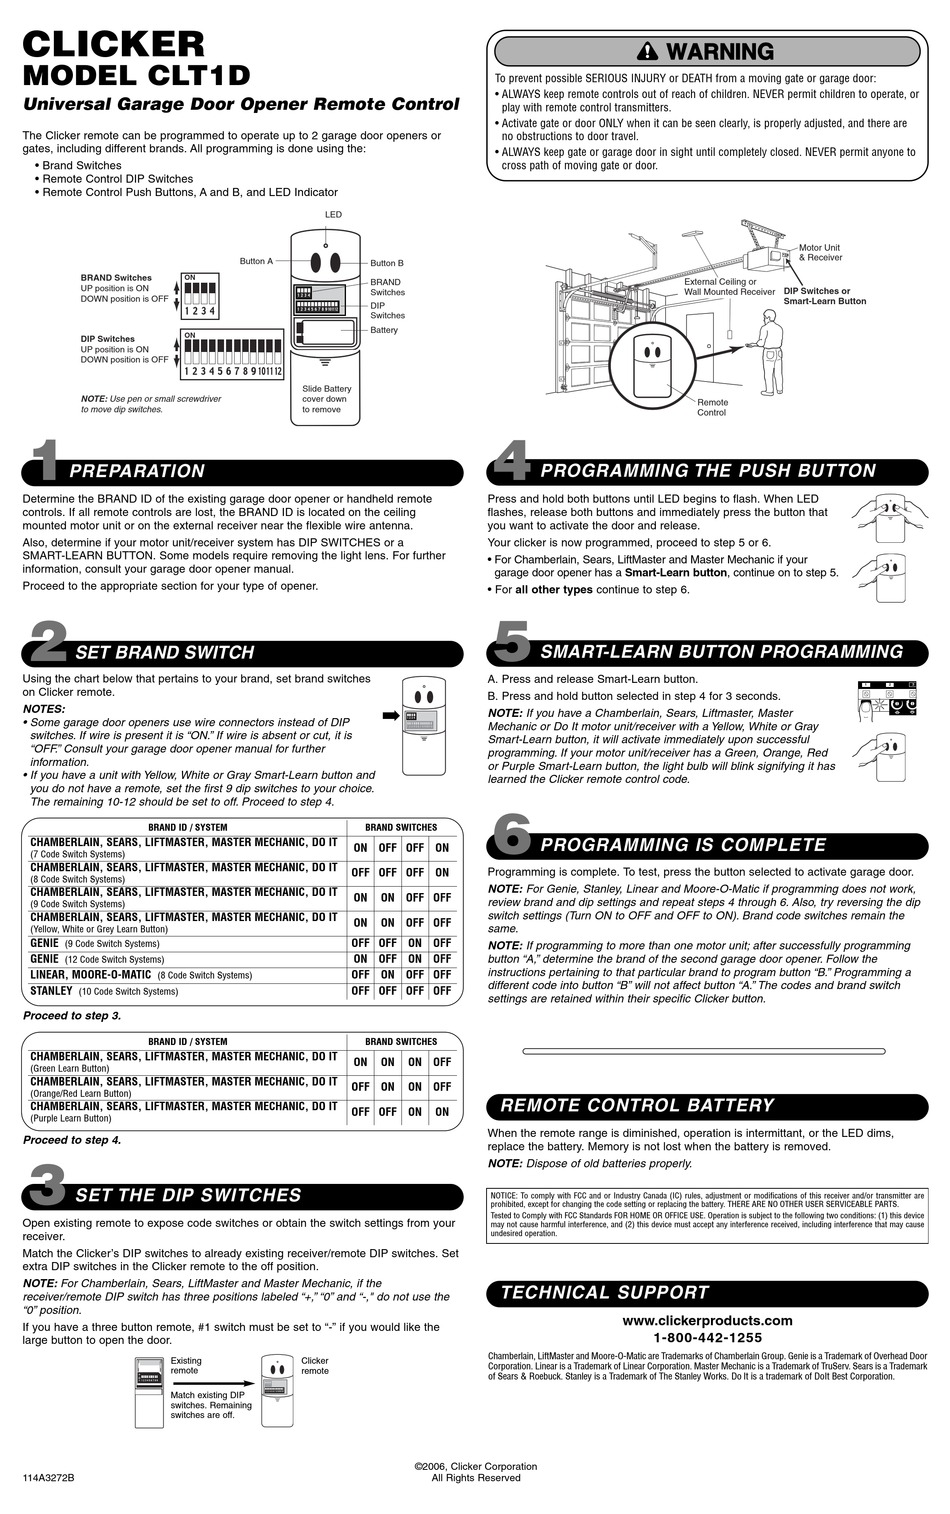 clicker-clt1d-owner-s-manual-pdf-download-manualslib